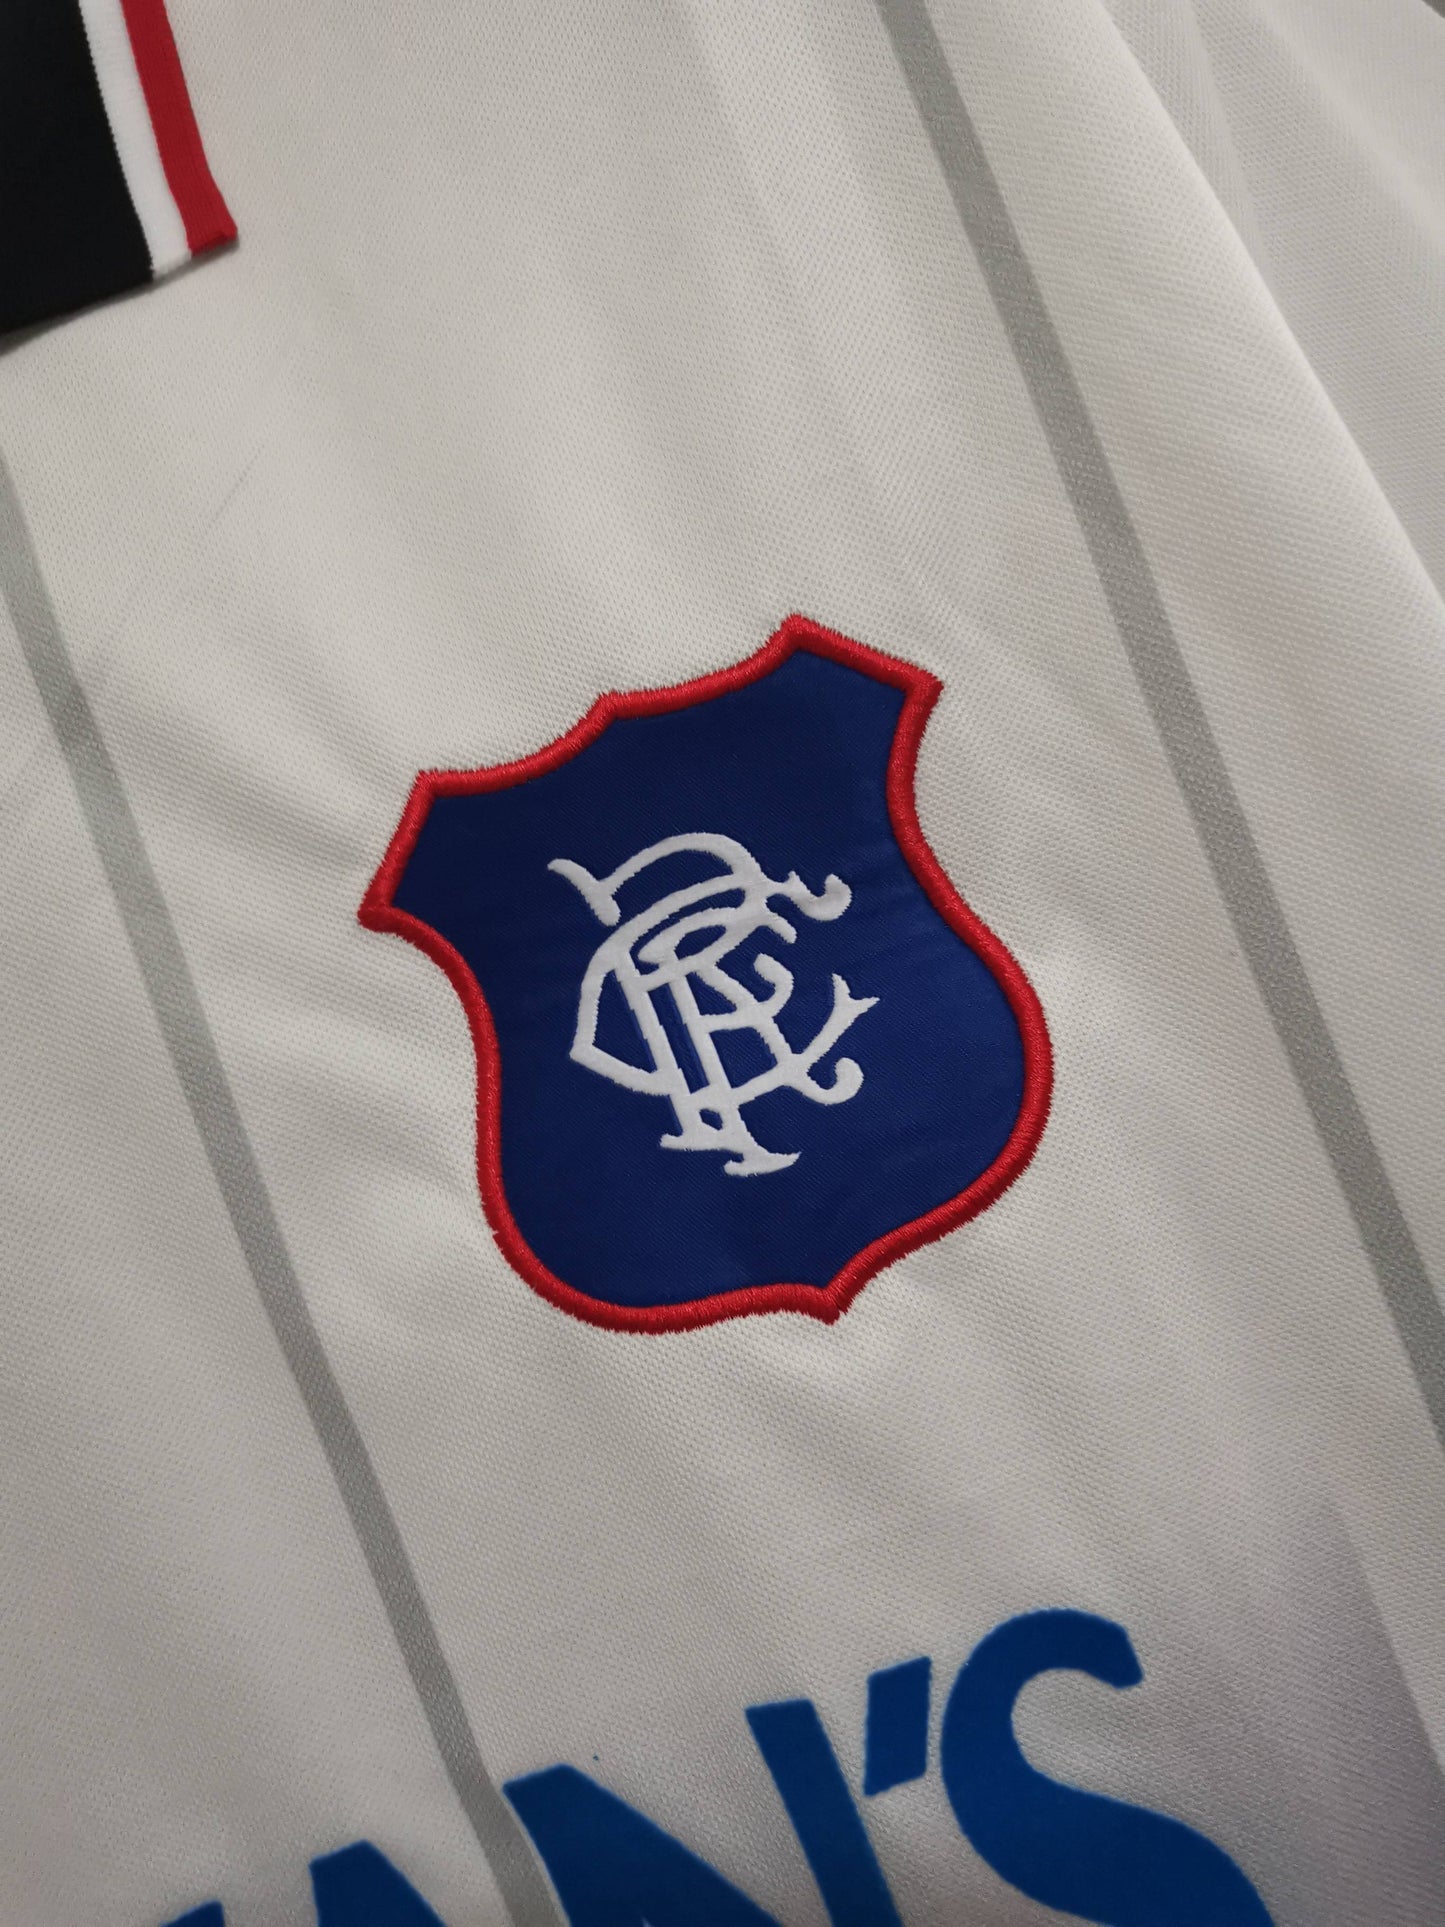 Rangers 97-99 Away Shirt